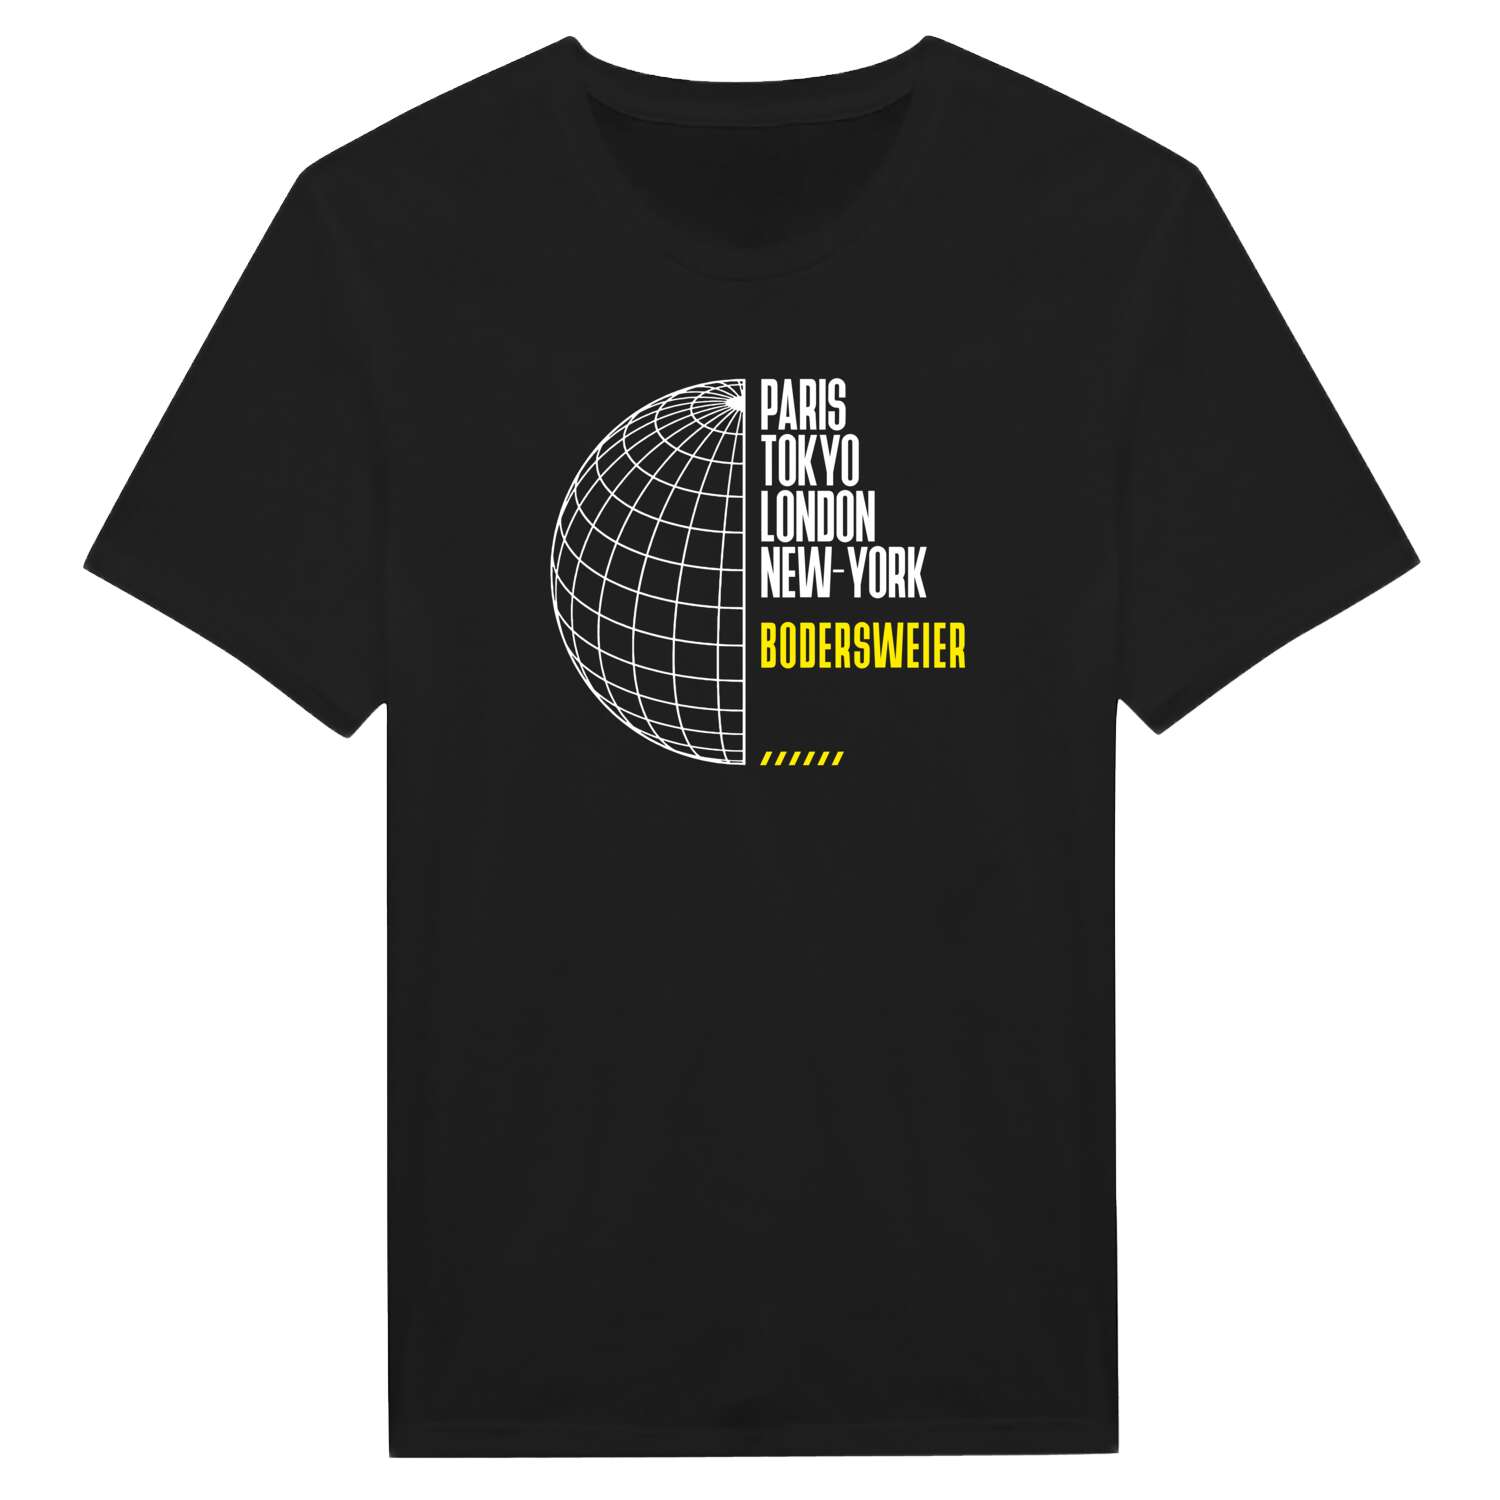 Bodersweier T-Shirt »Paris Tokyo London«